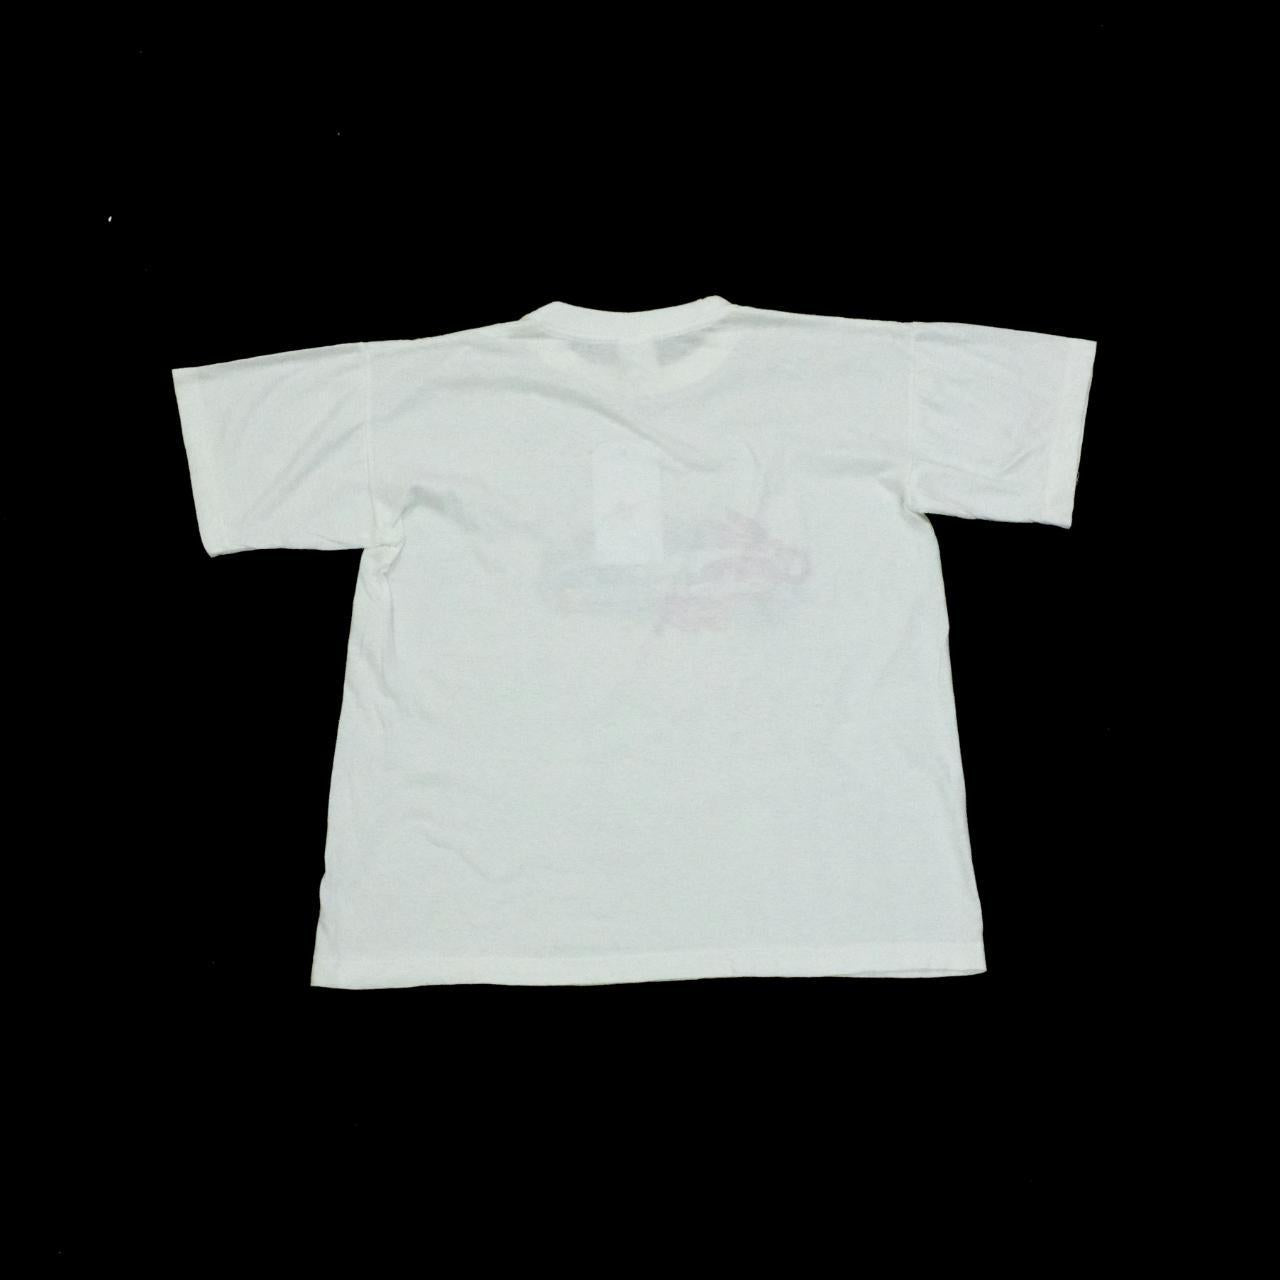 Alpitour 1995 T-shirt